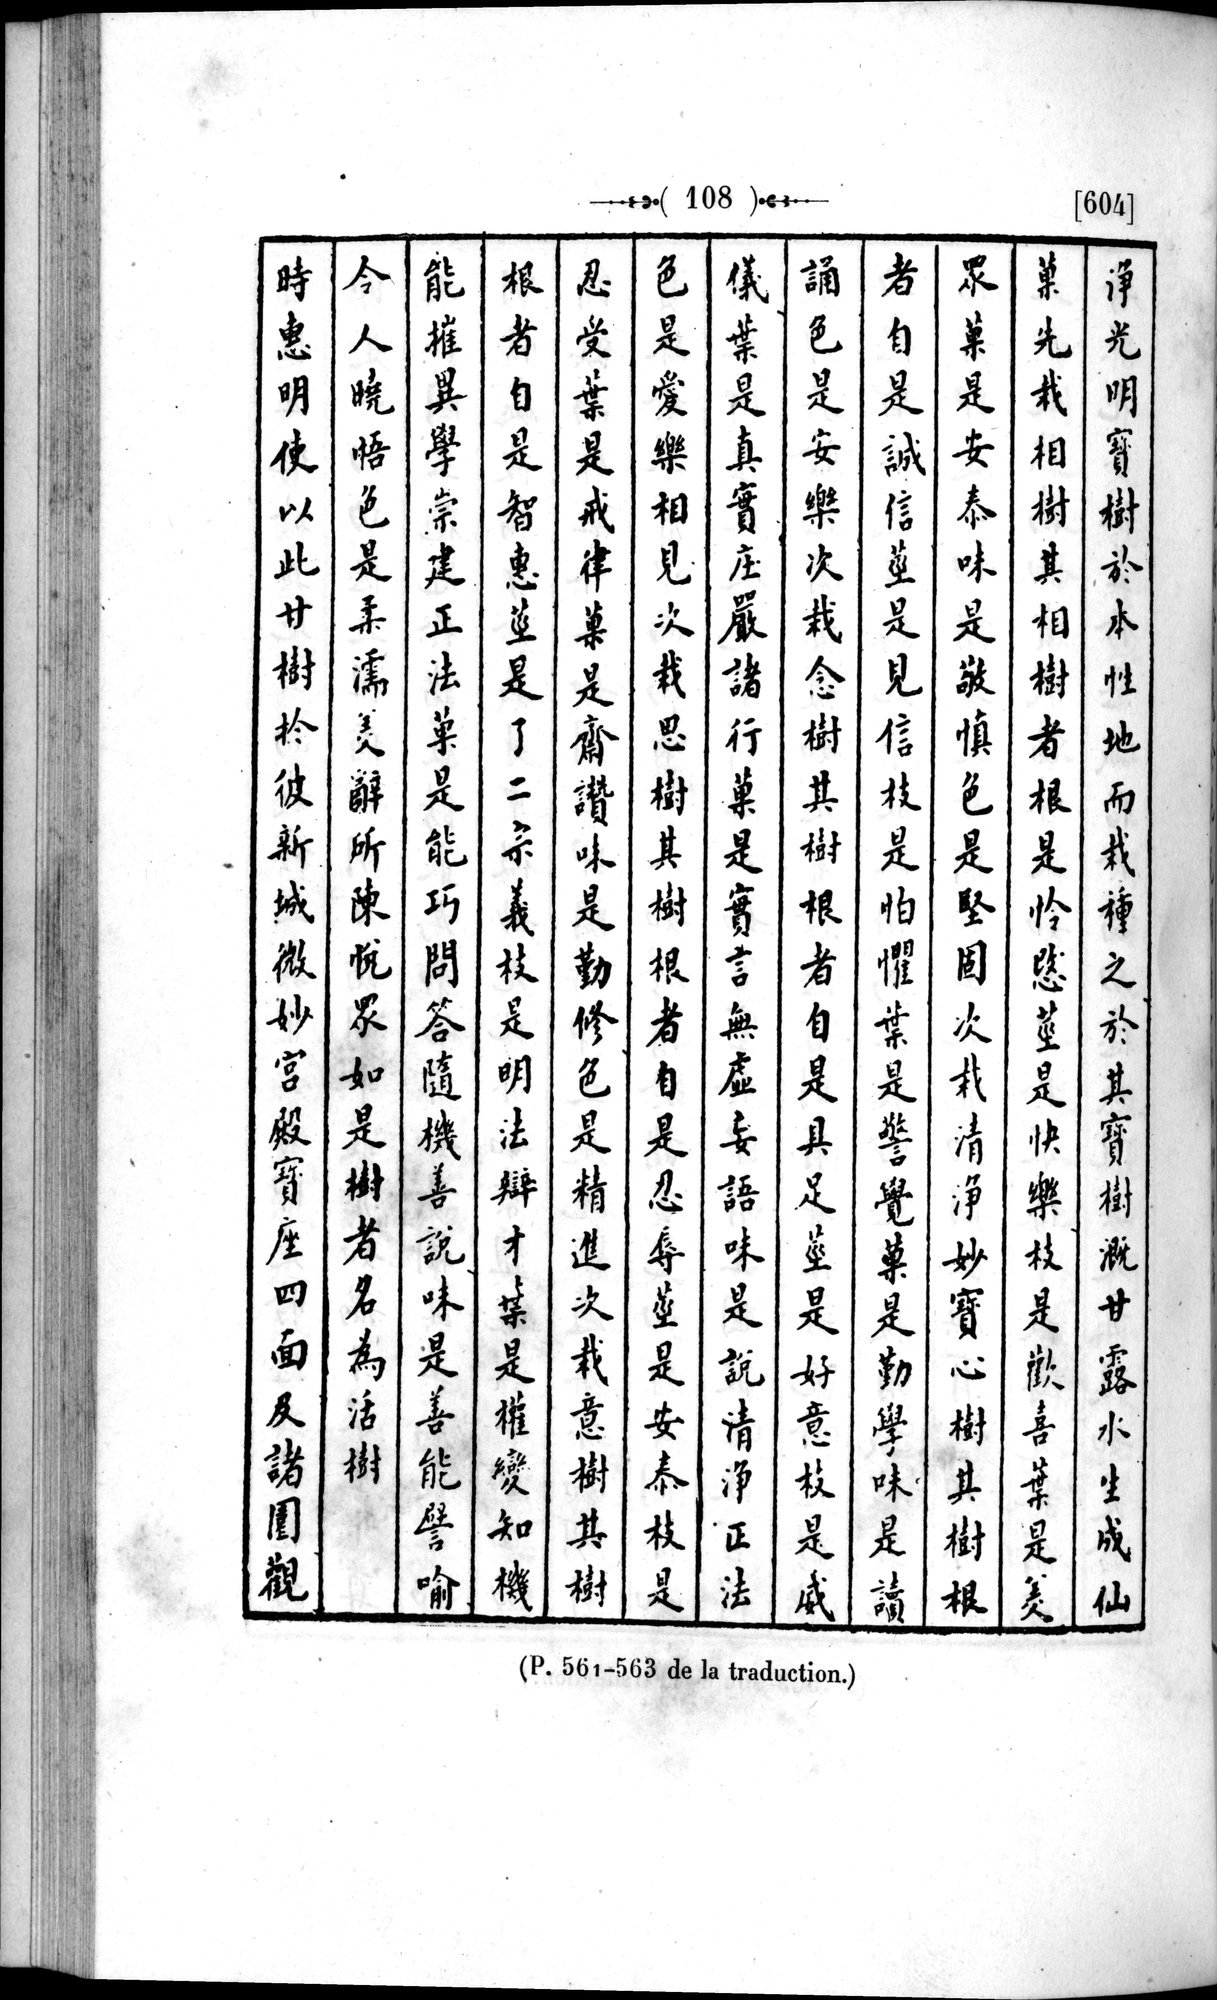 Un traité manichéen retrouvé en Chine : vol.1 / Page 118 (Grayscale High Resolution Image)